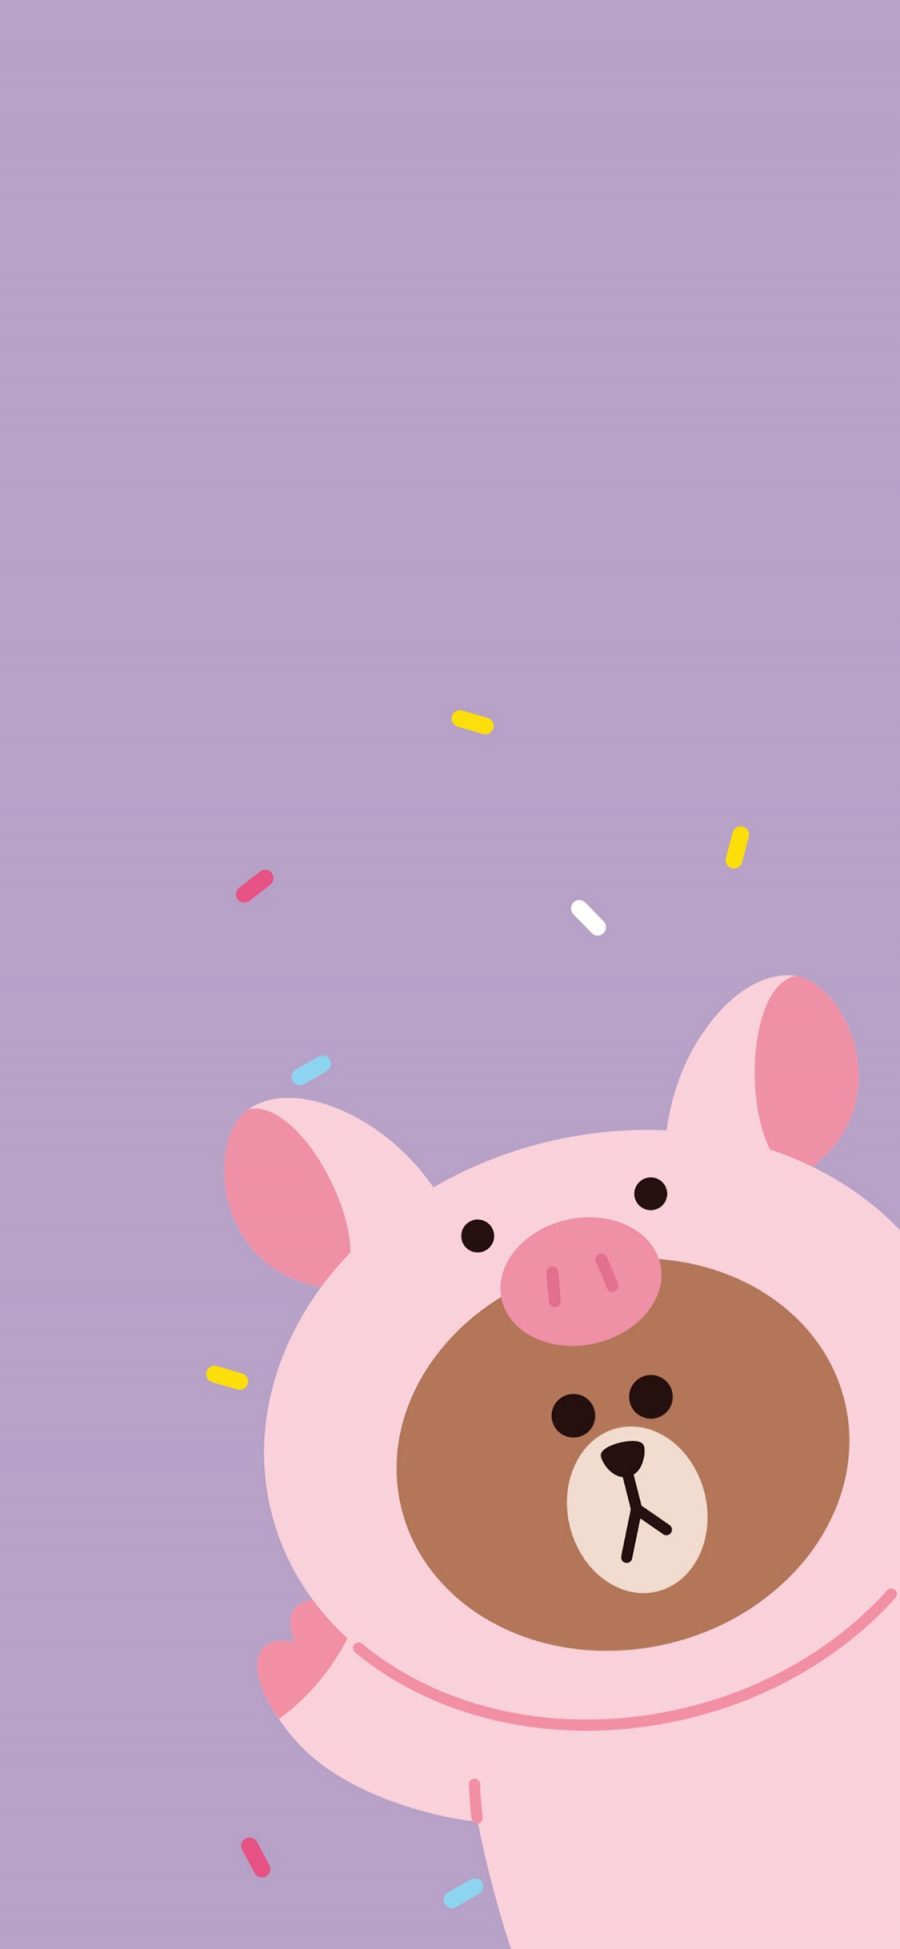 [2436×1125]布朗熊 猪 linefriends 卡通 可爱 紫色 苹果手机动漫壁纸图片